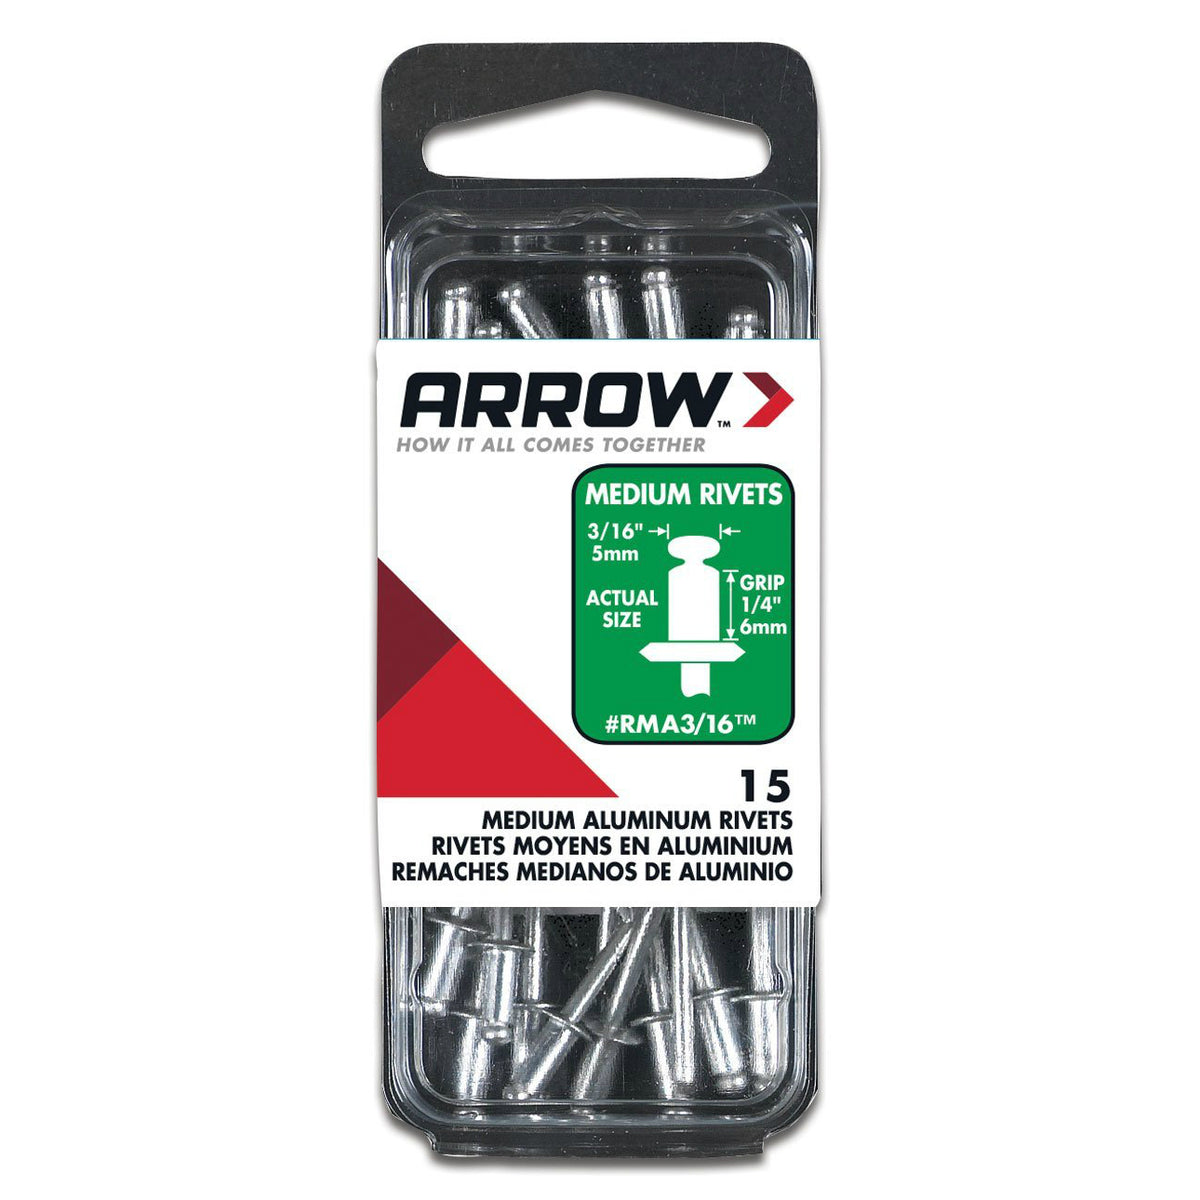 Arrow RMA3/16 Medium Aluminum Rivets, 3/16", 1/8" Length, 15 Piece